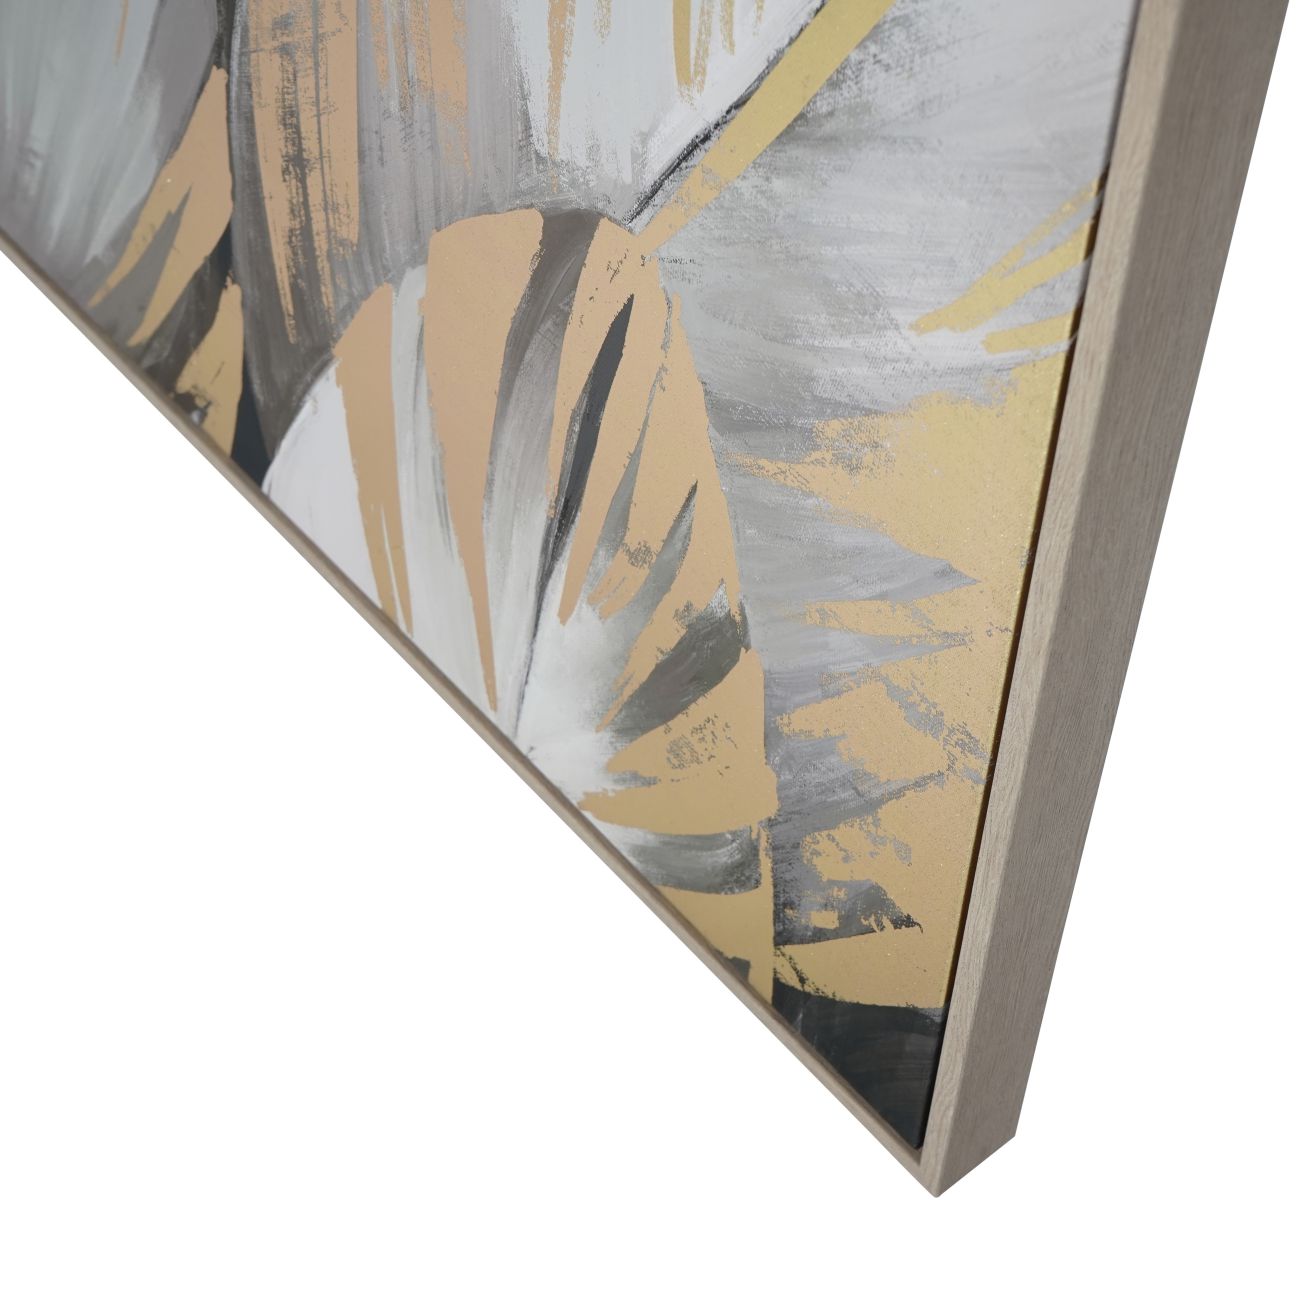 Gerahmte Leinwand mit grauer Federfolie, 140 x 100 cm